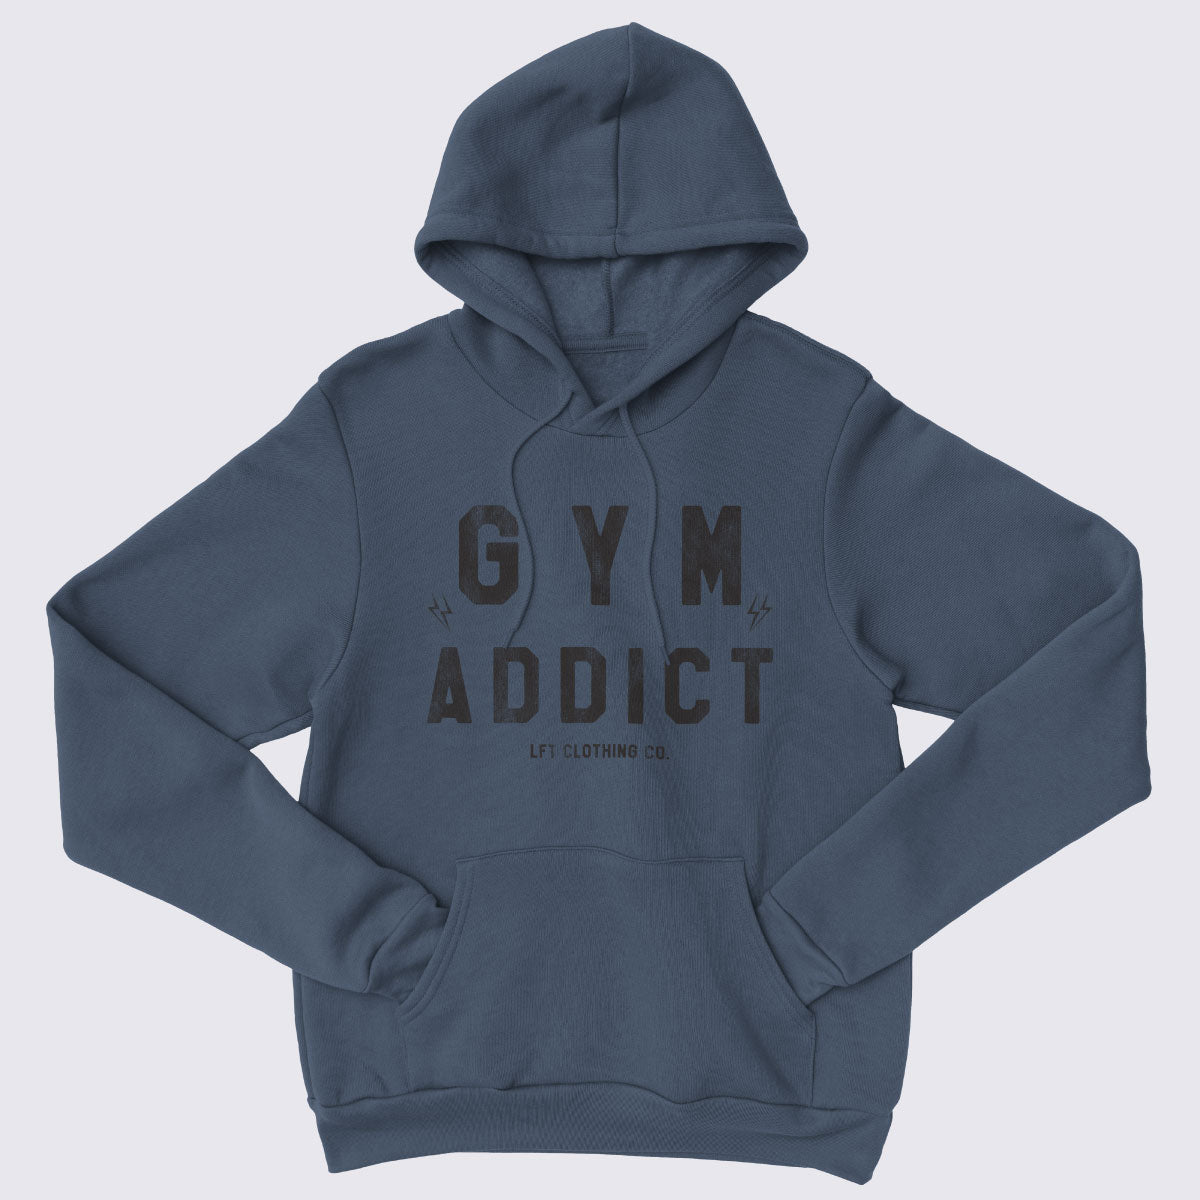 Gym Addict Core Fleece Pullover Hooded Sweatshirt